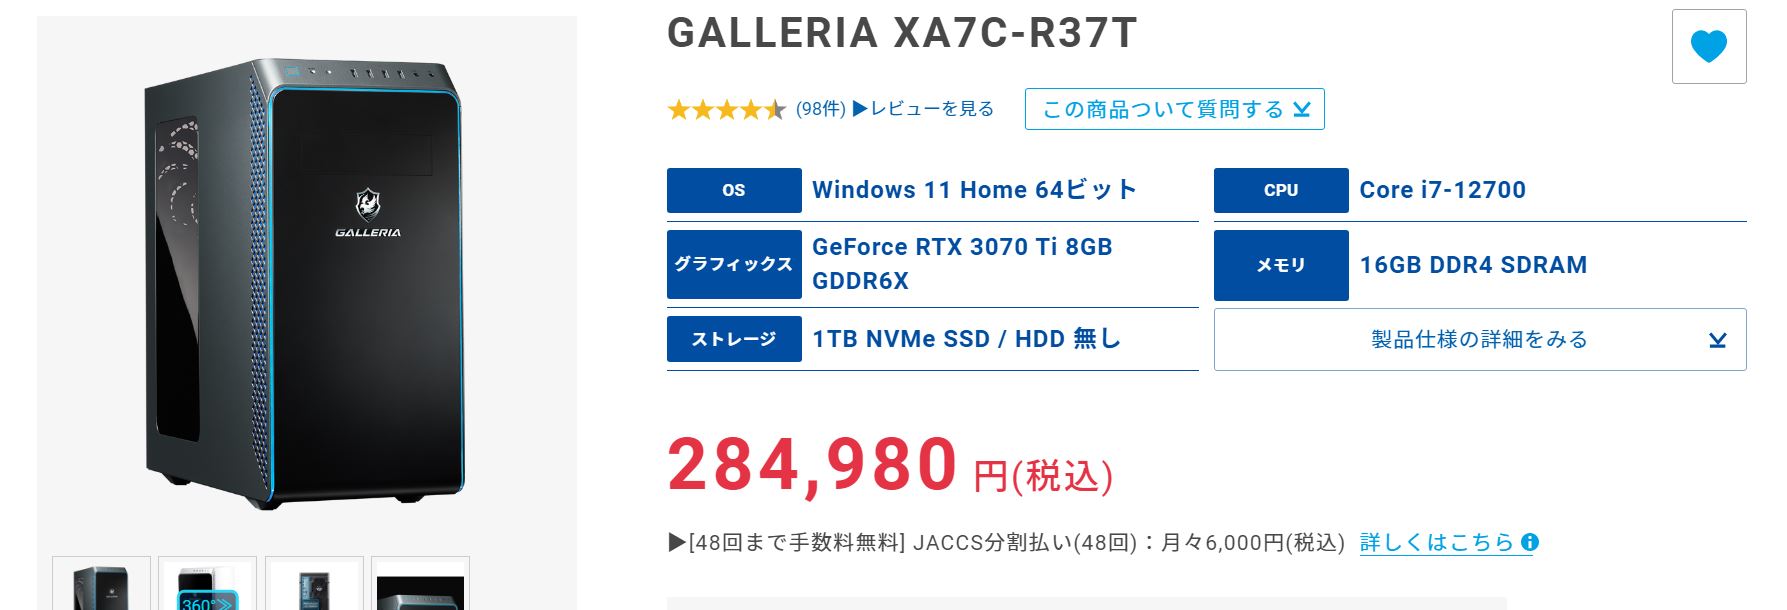 ガレリア XA7C-R37T - デスクトップ型PC